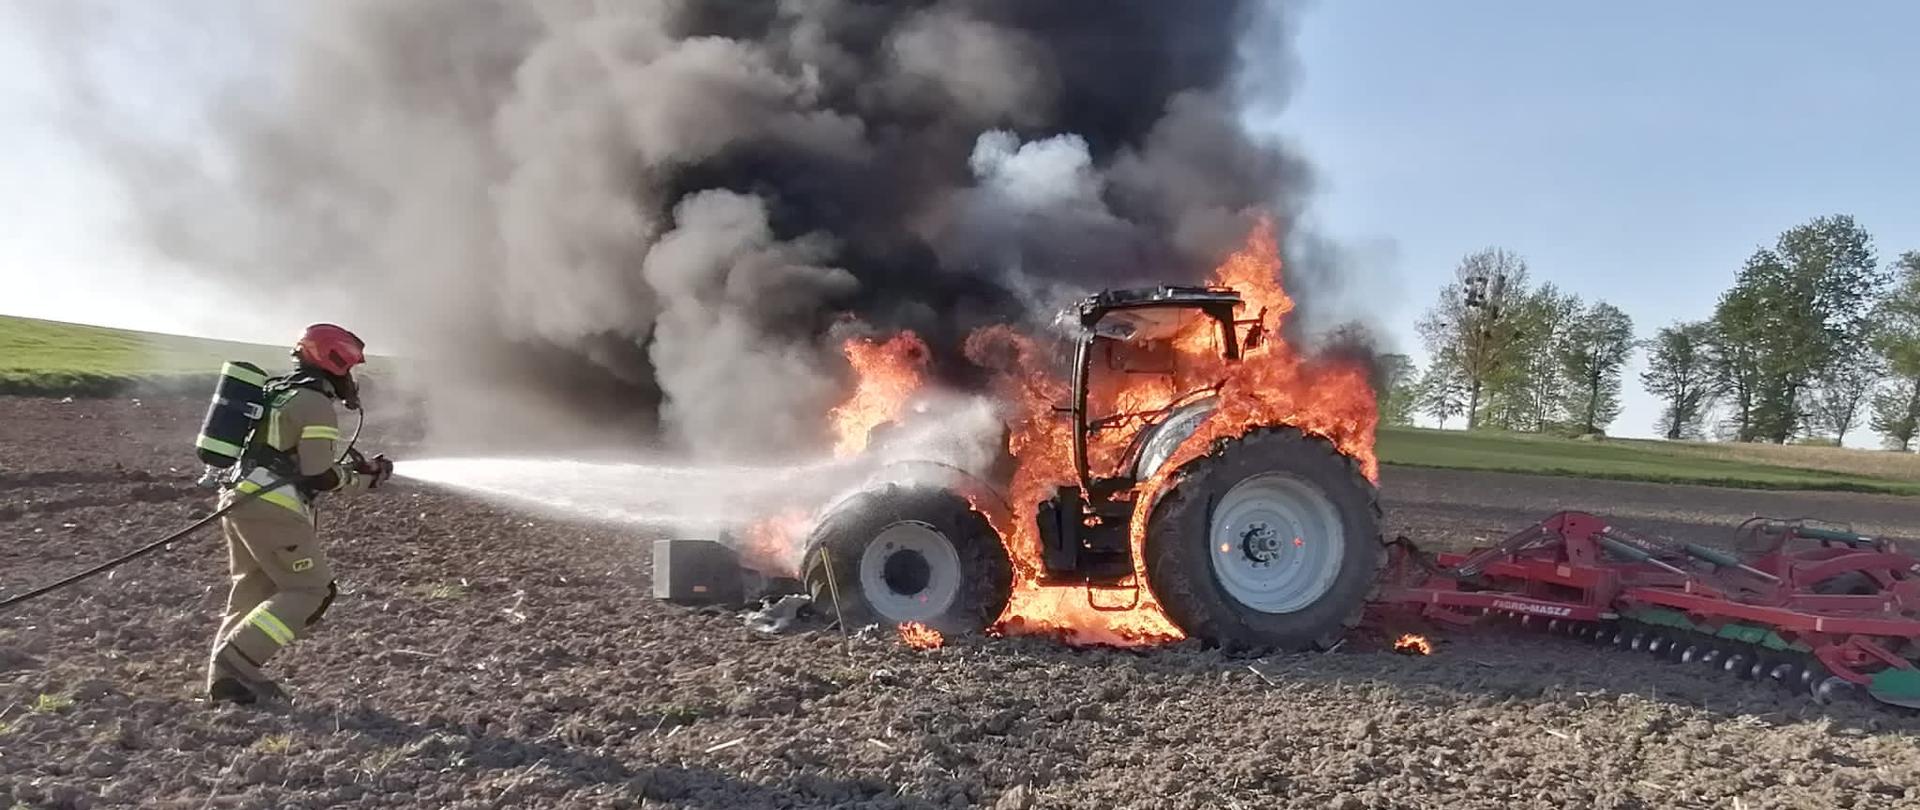 Pożar ciągnika rolniczego na uprawianym polu. Ciągnik cały w ogniu, dużo dymu. Strażak podchodzi z linia gaśniczą.